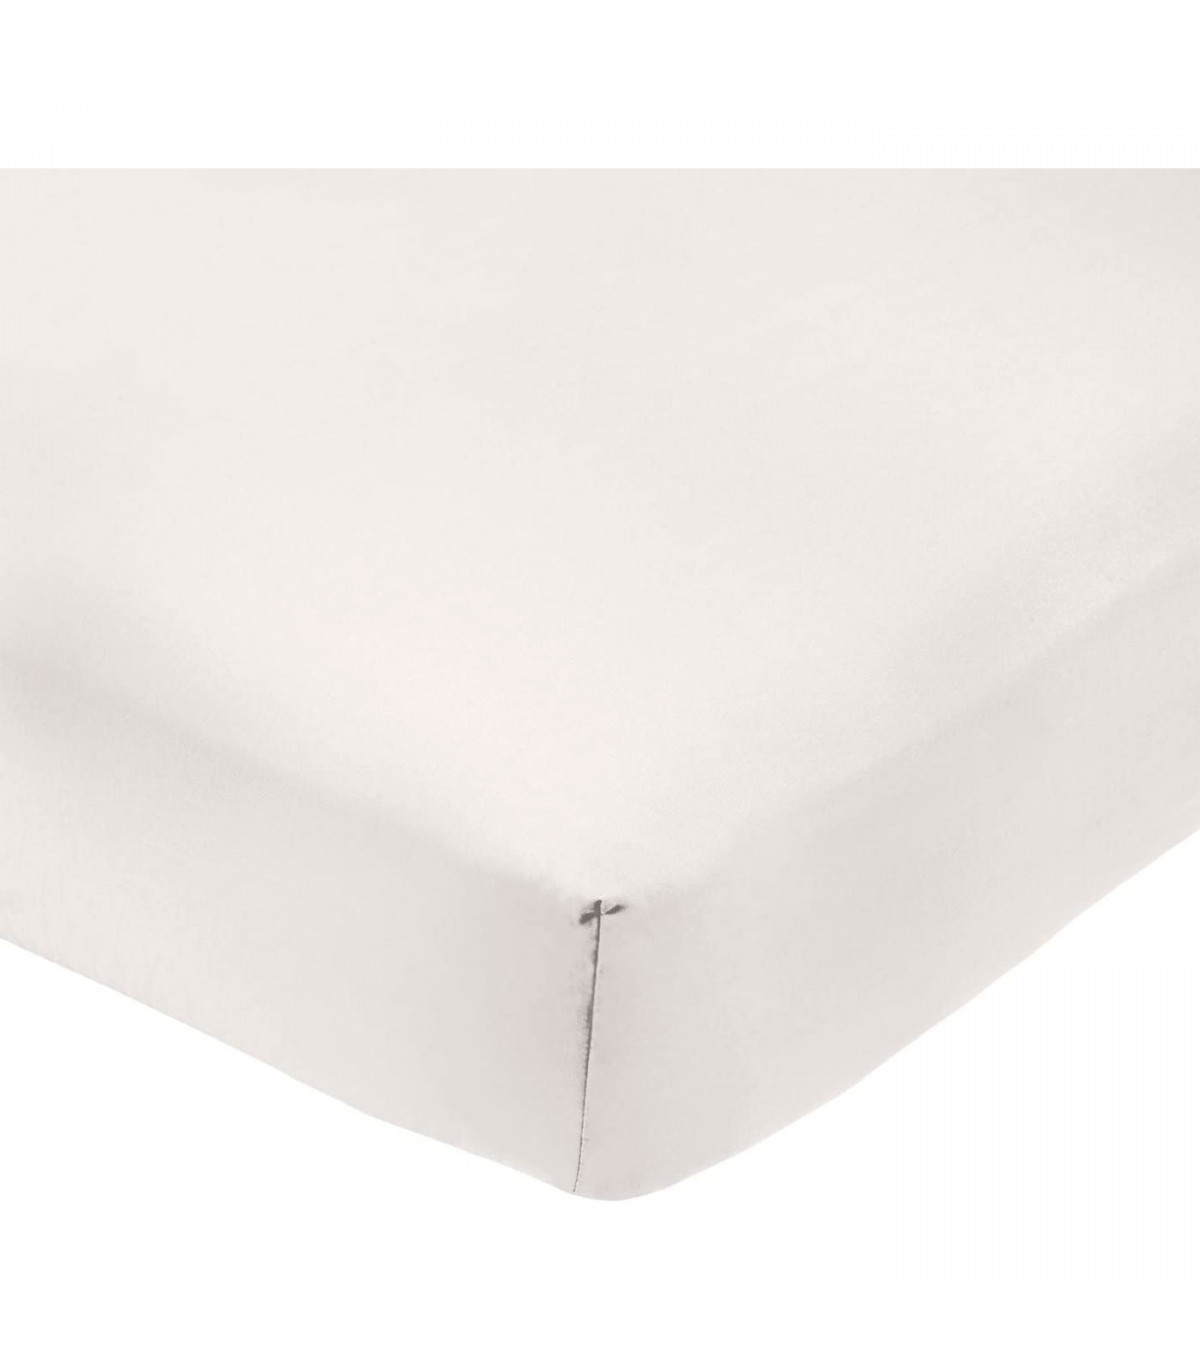 Tradineur - Sábana bajera ajustable de algodón para cama de 135, especial  pieles sensibles, suave y transpirable (Blanco, 135 x